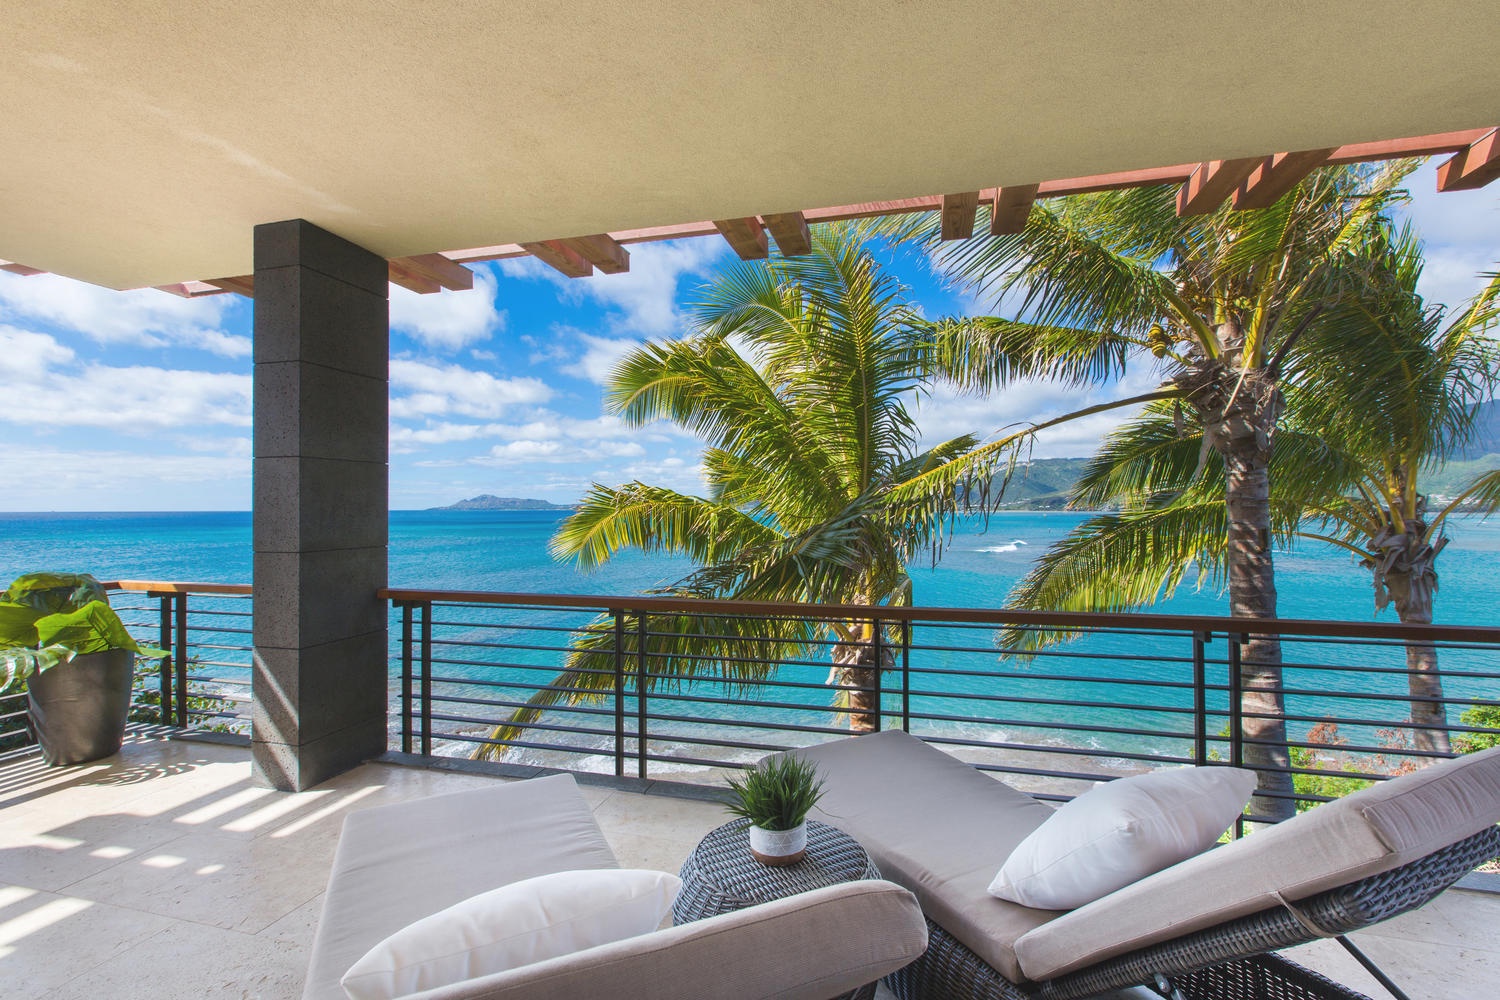 Honolulu Vacation Rentals, Ocean House 4 Bedroom - Primary bedroom lanai views